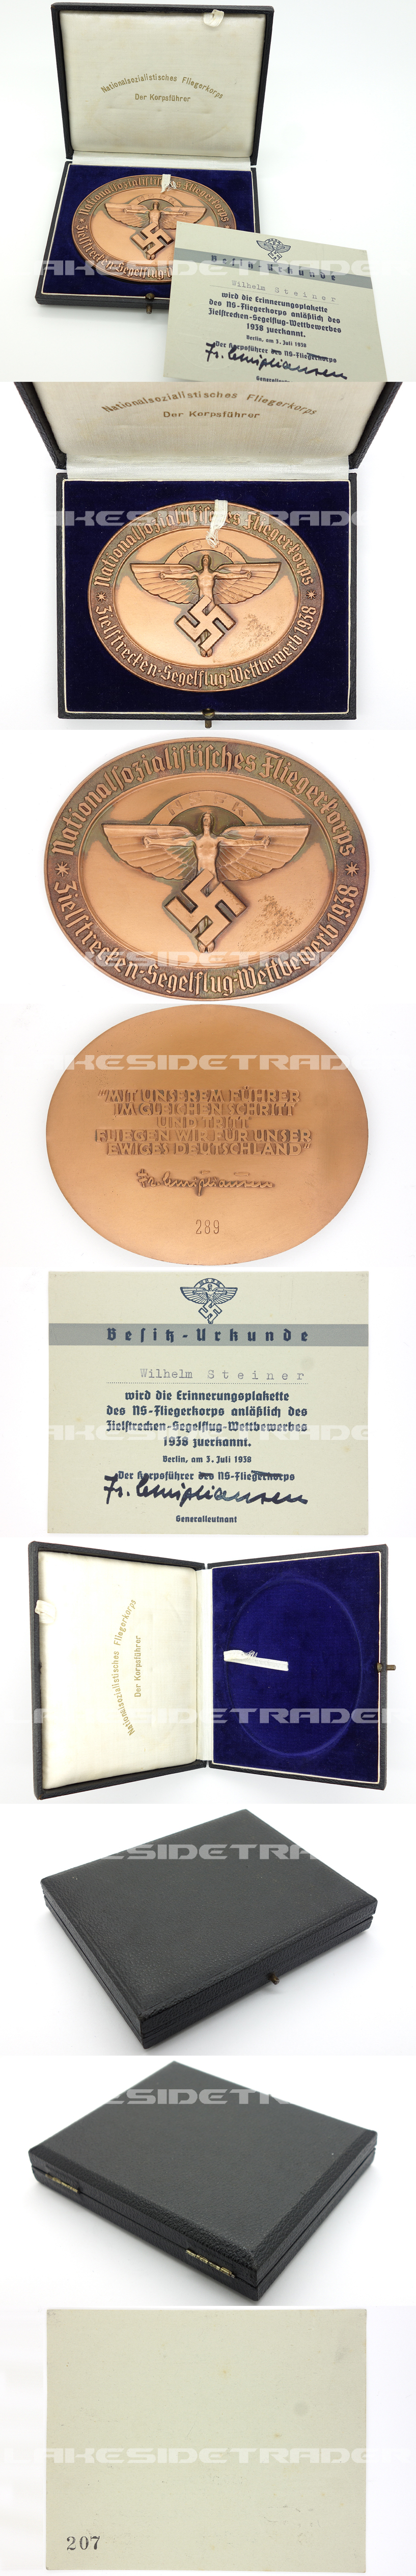 NSFK Award Medallion, Case & Certificate 1938